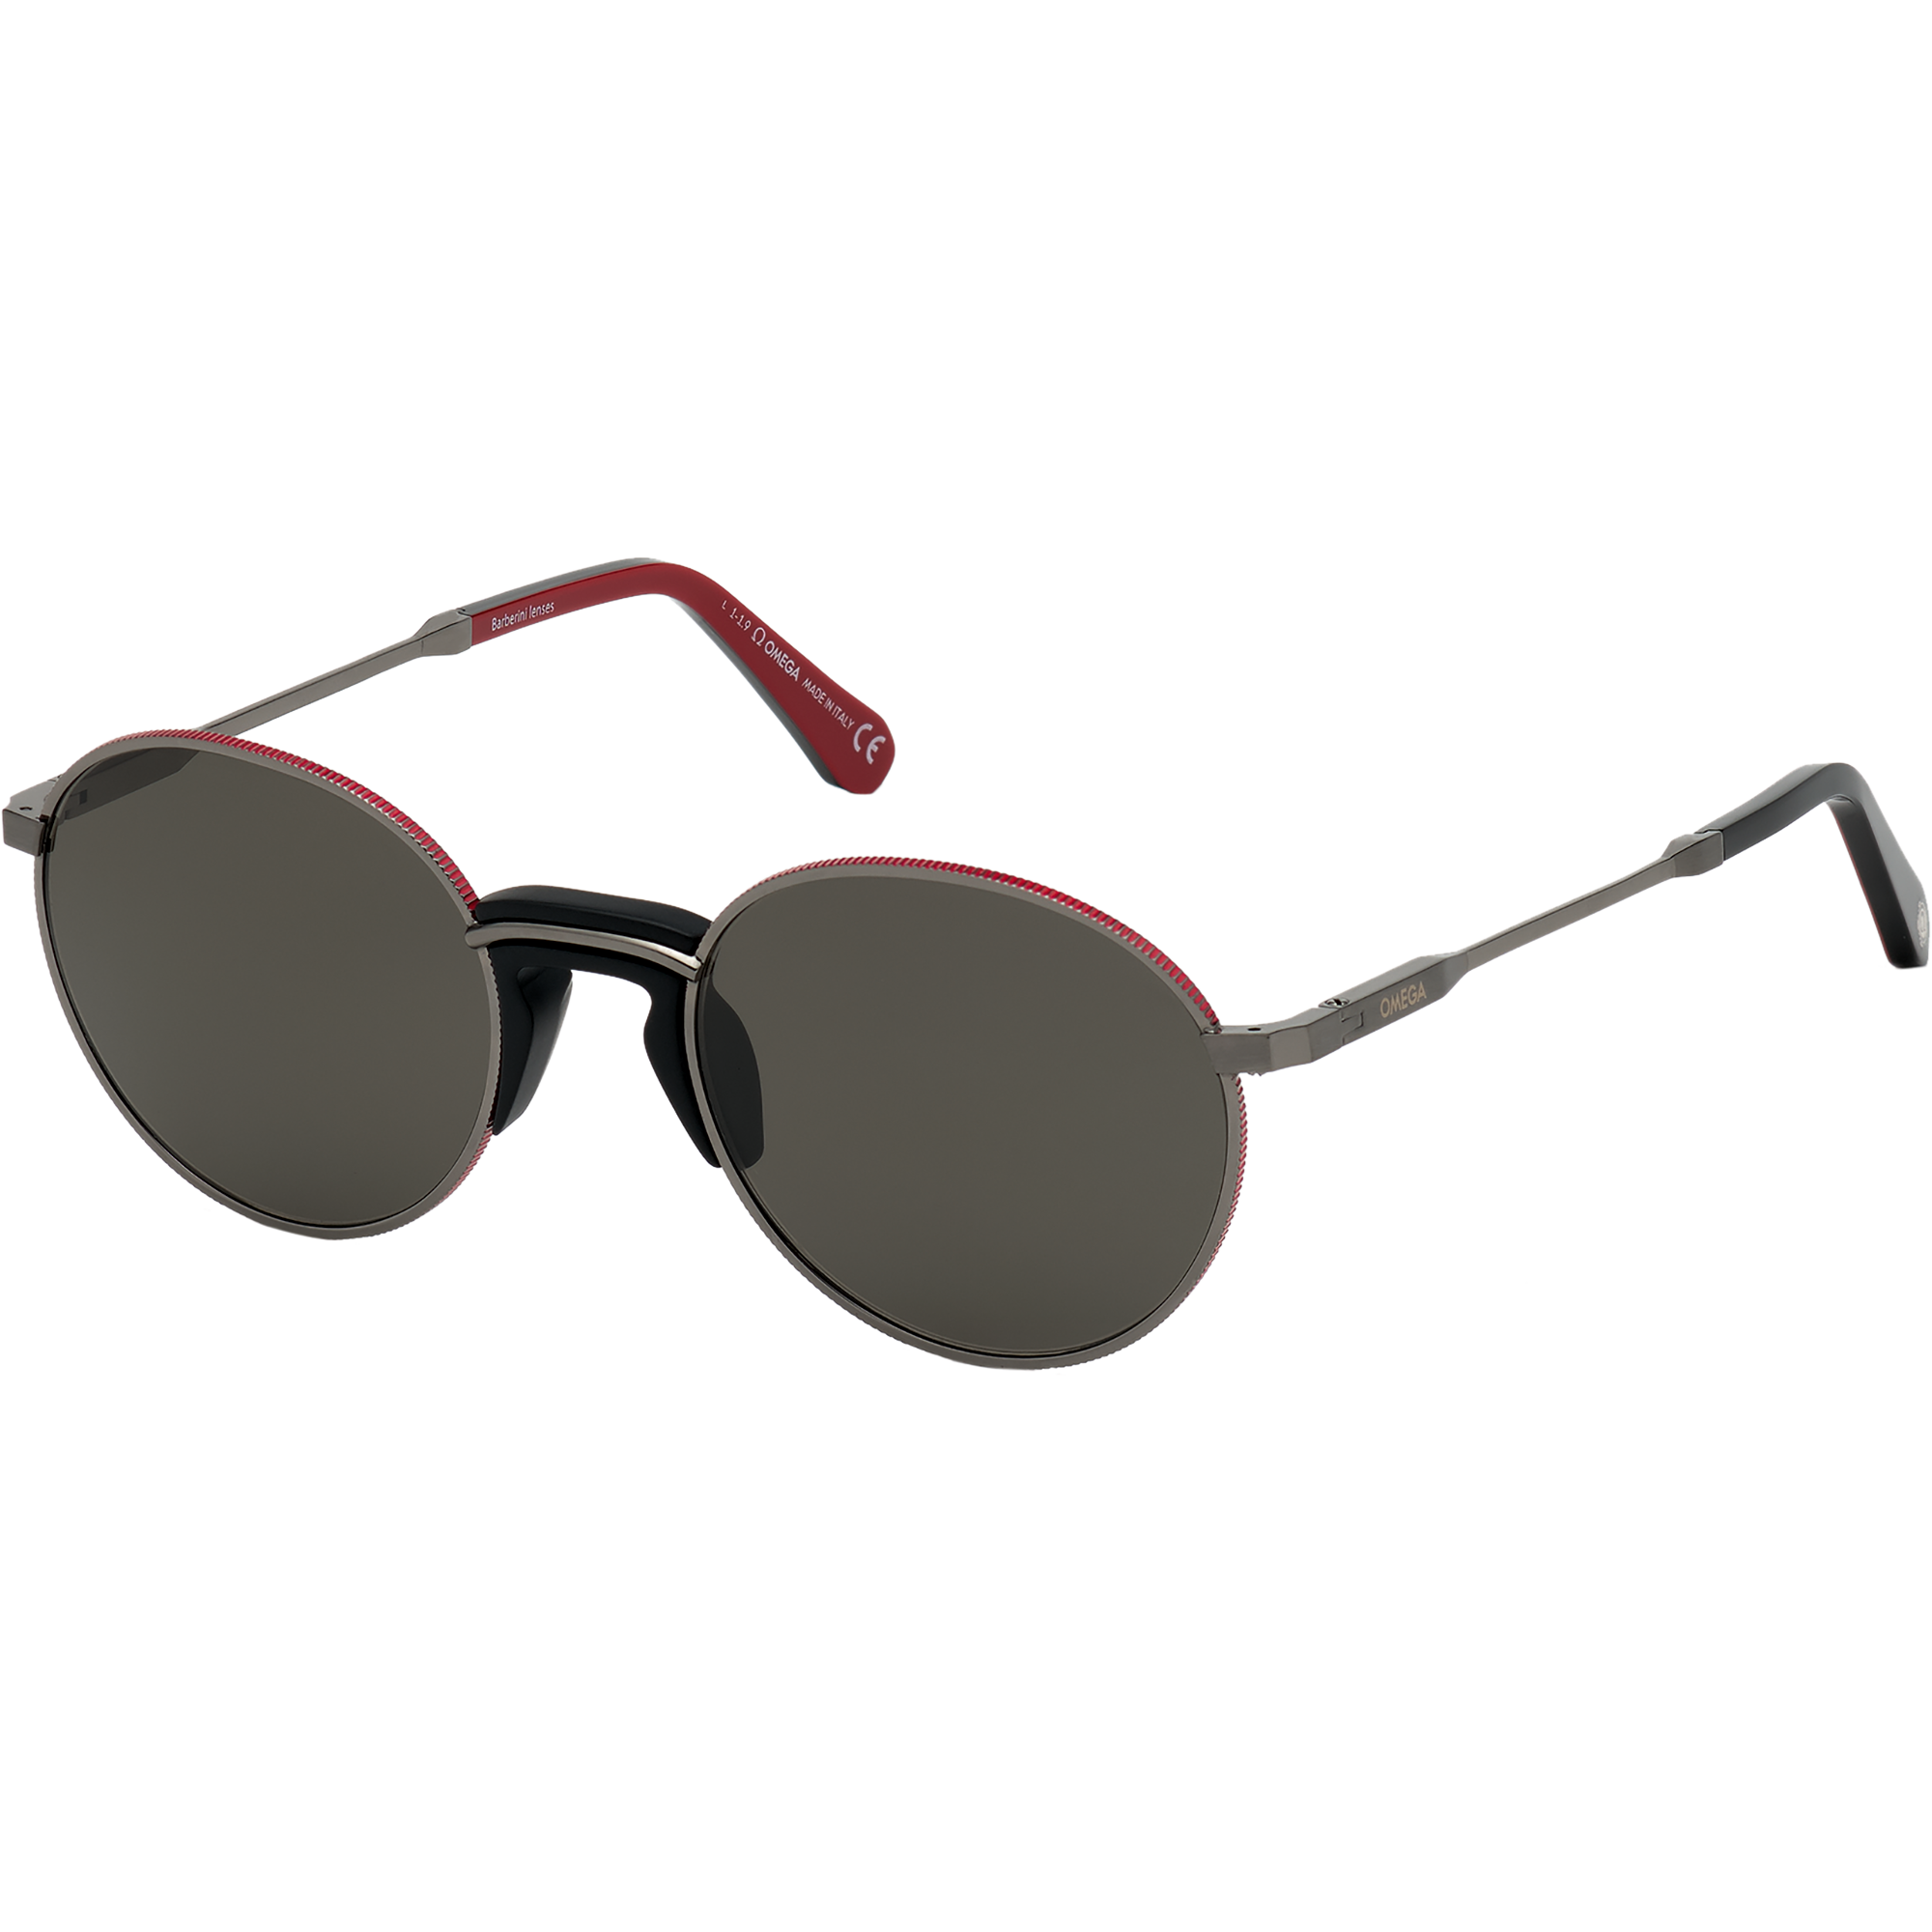 Солнцезащитные очки - Круглая форма, МУЖСКИЕ ОЧКИ - OM0019-H5308D